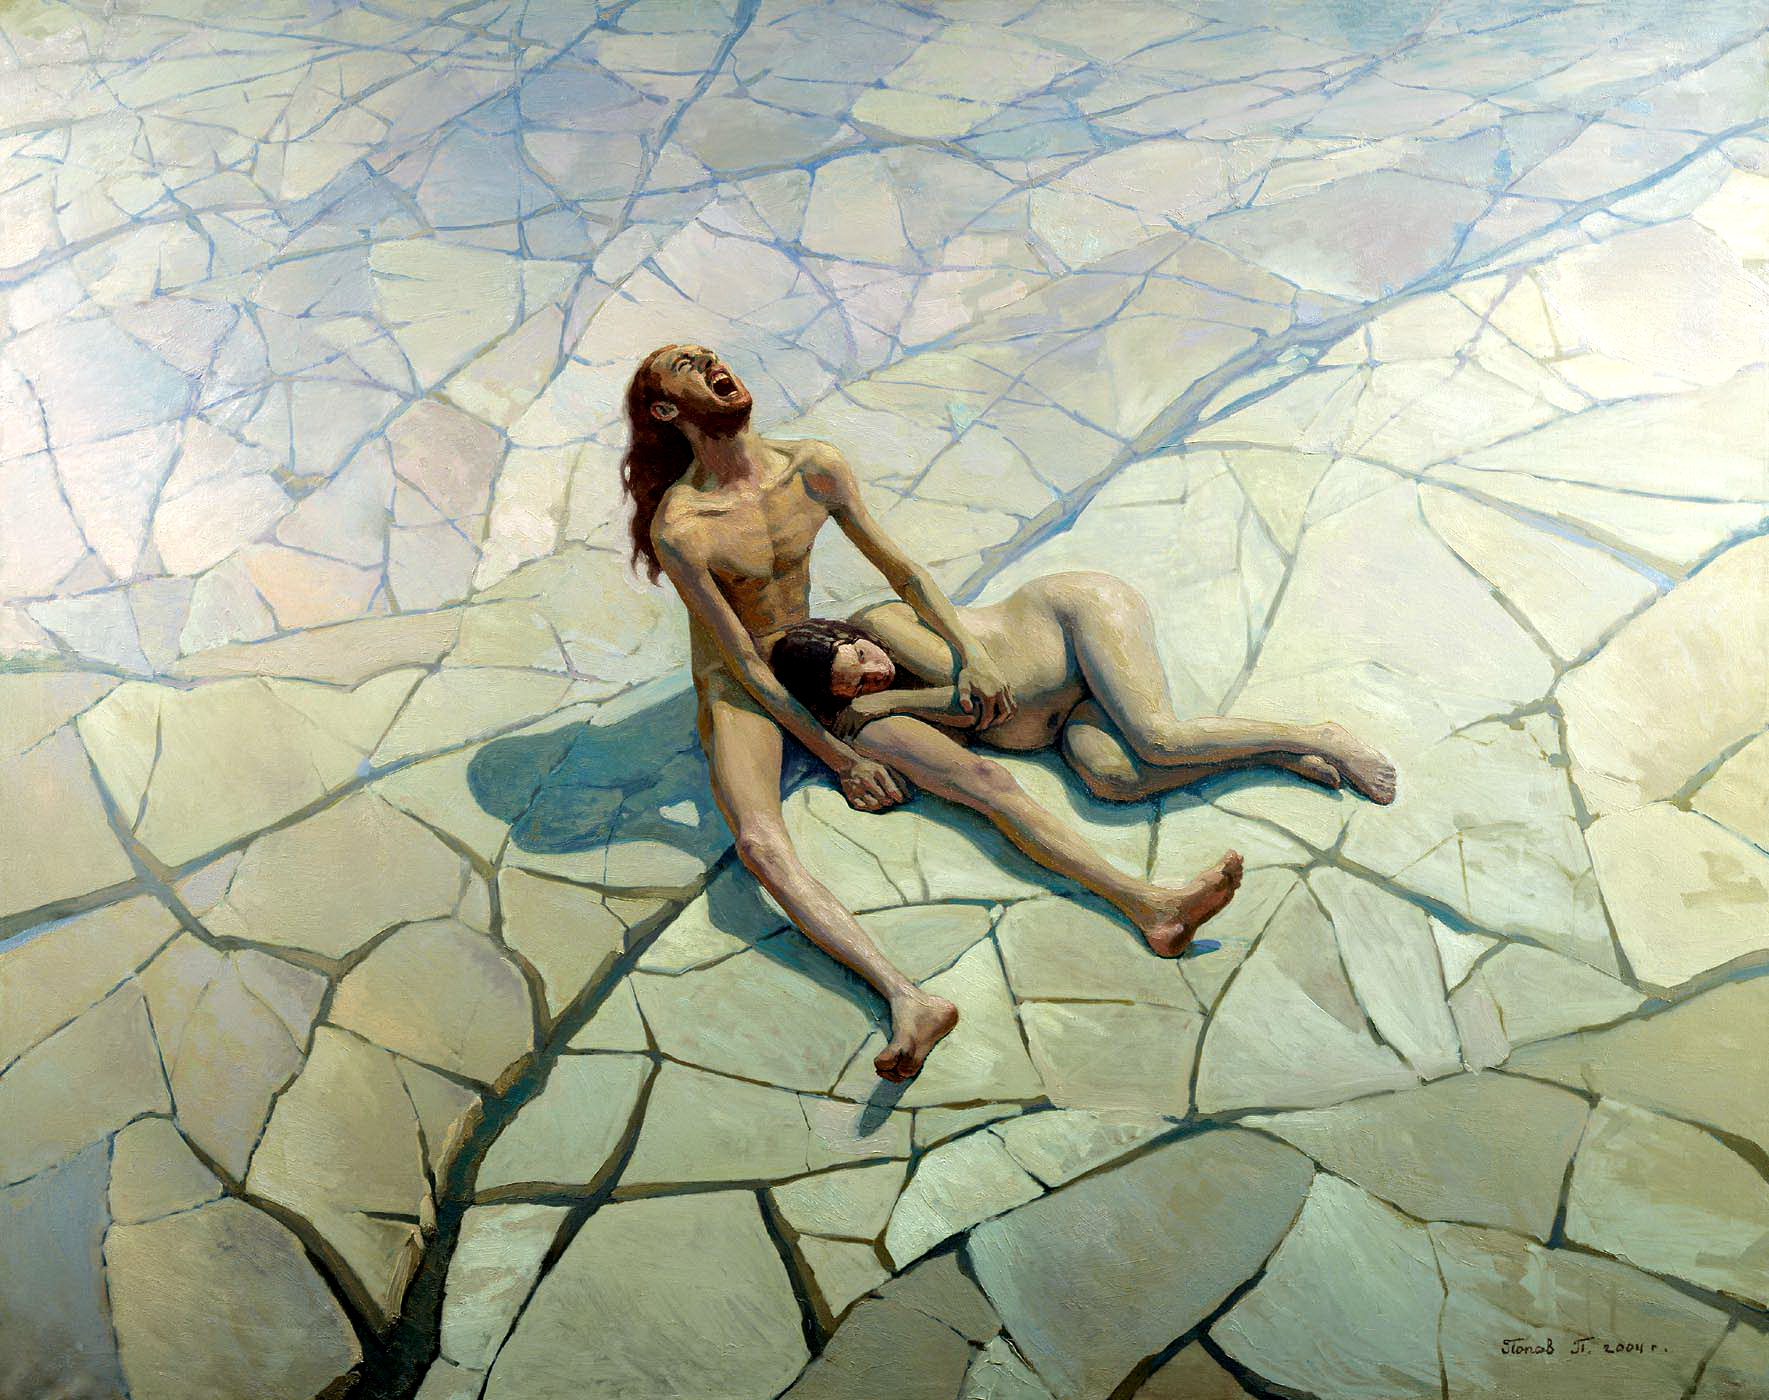 П.Попов, “адам и ева. Потерянный рай”, 2004 год.